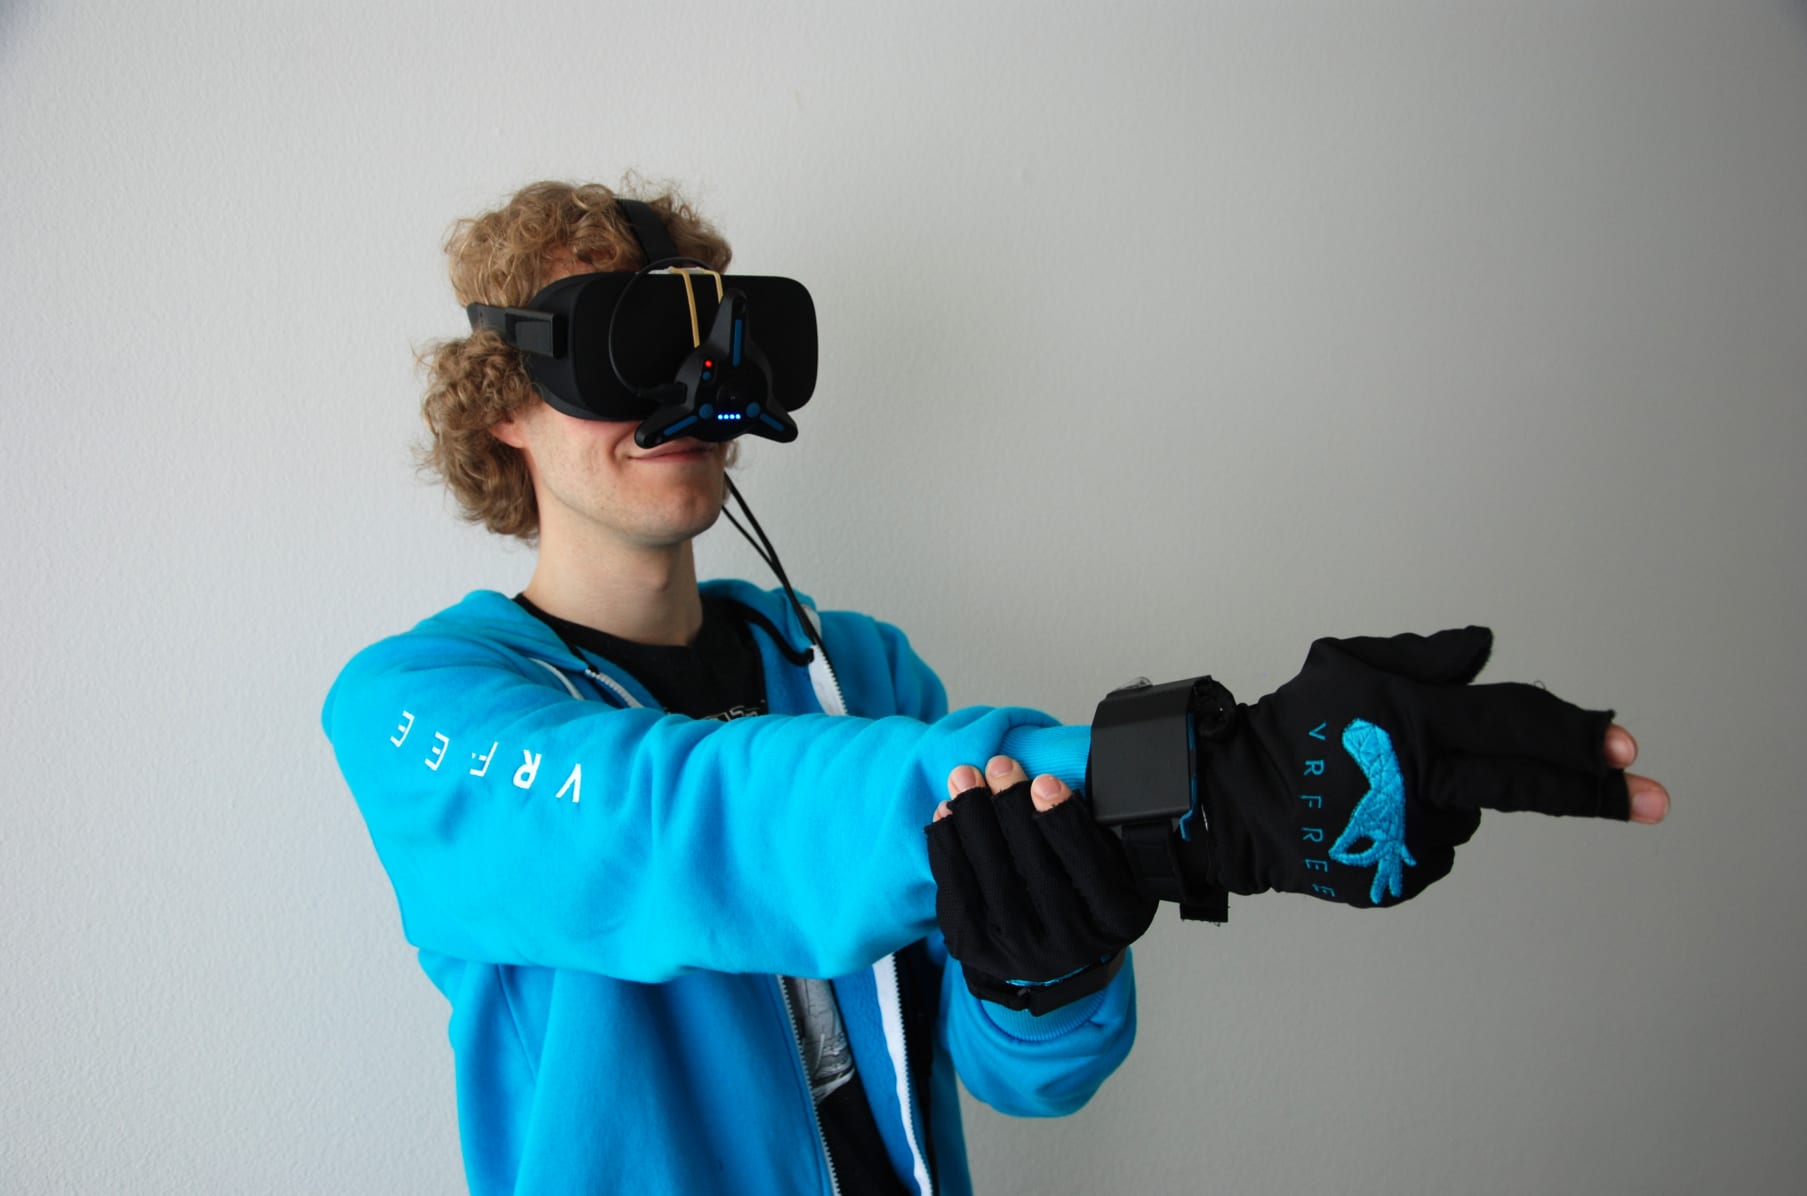 VRfree glove system | Indiegogo